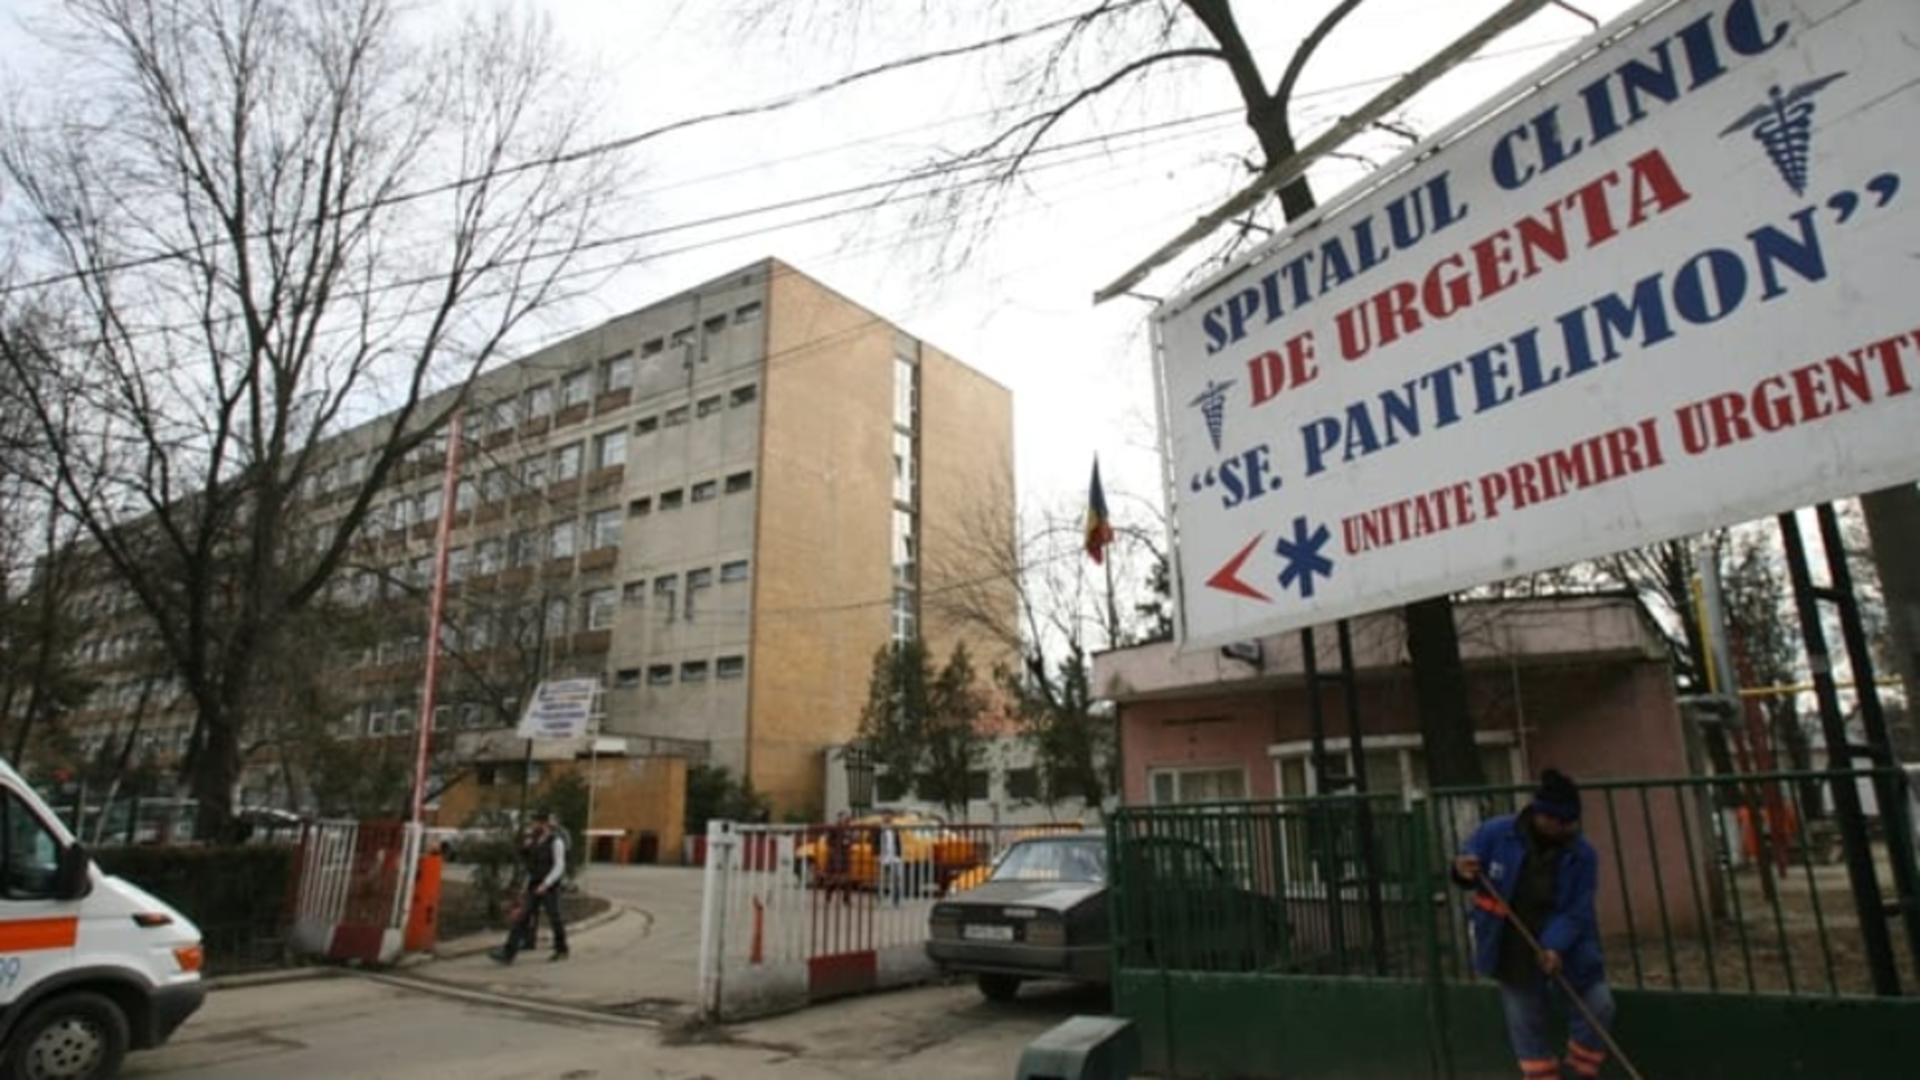 Val de morți suspecte la Spitalul Sf. Pantelimon din Capitală. Unitatea medicală este din nou în centrul unui scandal/ Facebook